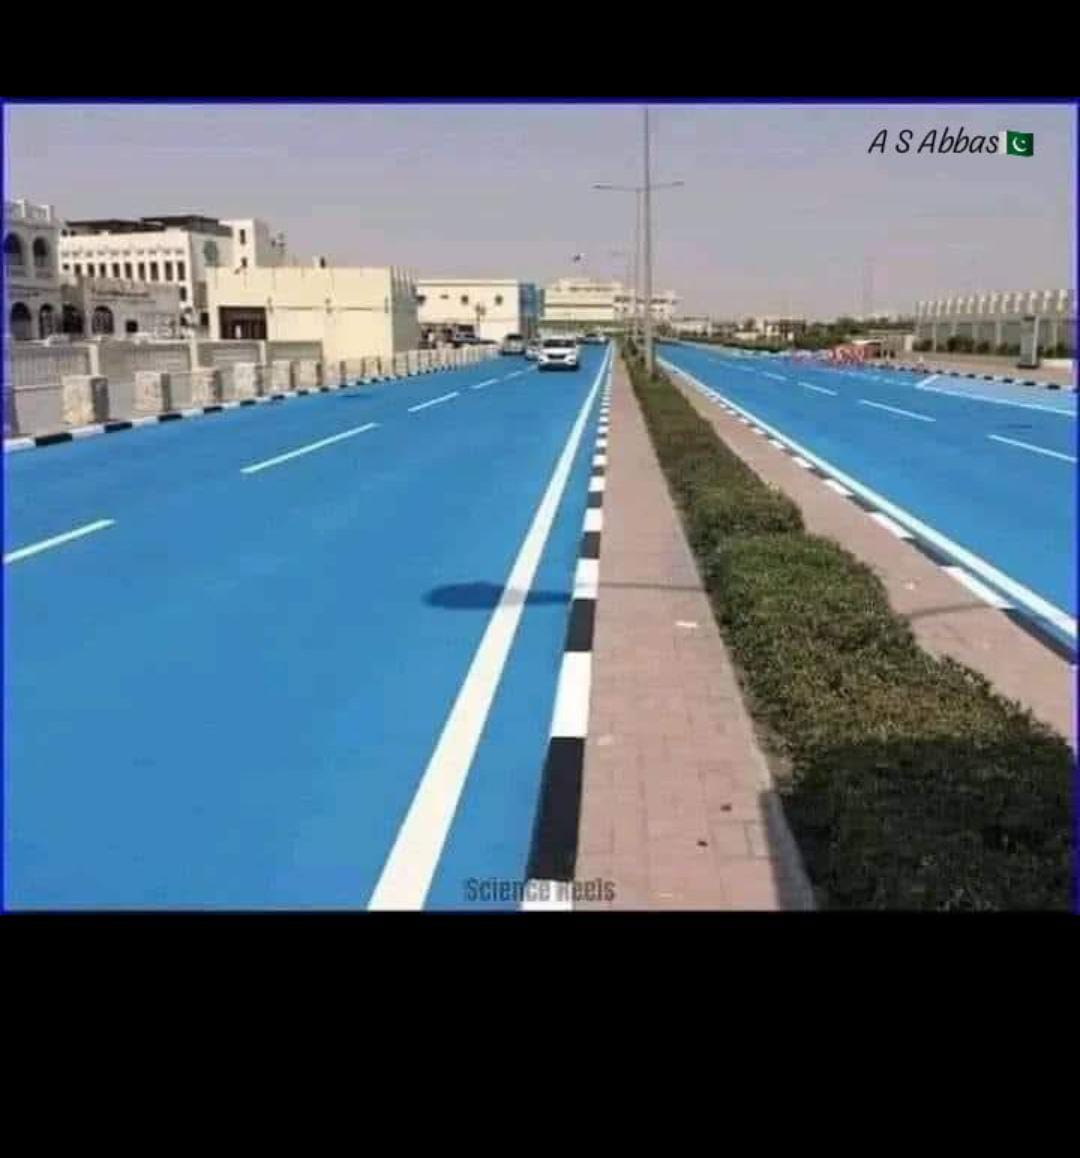 قطر ؛ دنیا کا پہلا ملک جس نے اپنے سڑکوں کا رنگ سیاہ سے تبدیل کرکے نیلا کرنا شروع کردیا ھےاور ماہرین کا کہنا ہے کہ یہ معاملہ گرمیوں میں پہیوں کے درجہ حرارت کے لیے بہتر ہے اور رات کے وقت بہتر روشنی کا امکان فراہم کرتا ہے۔ #PTI_Folllowers